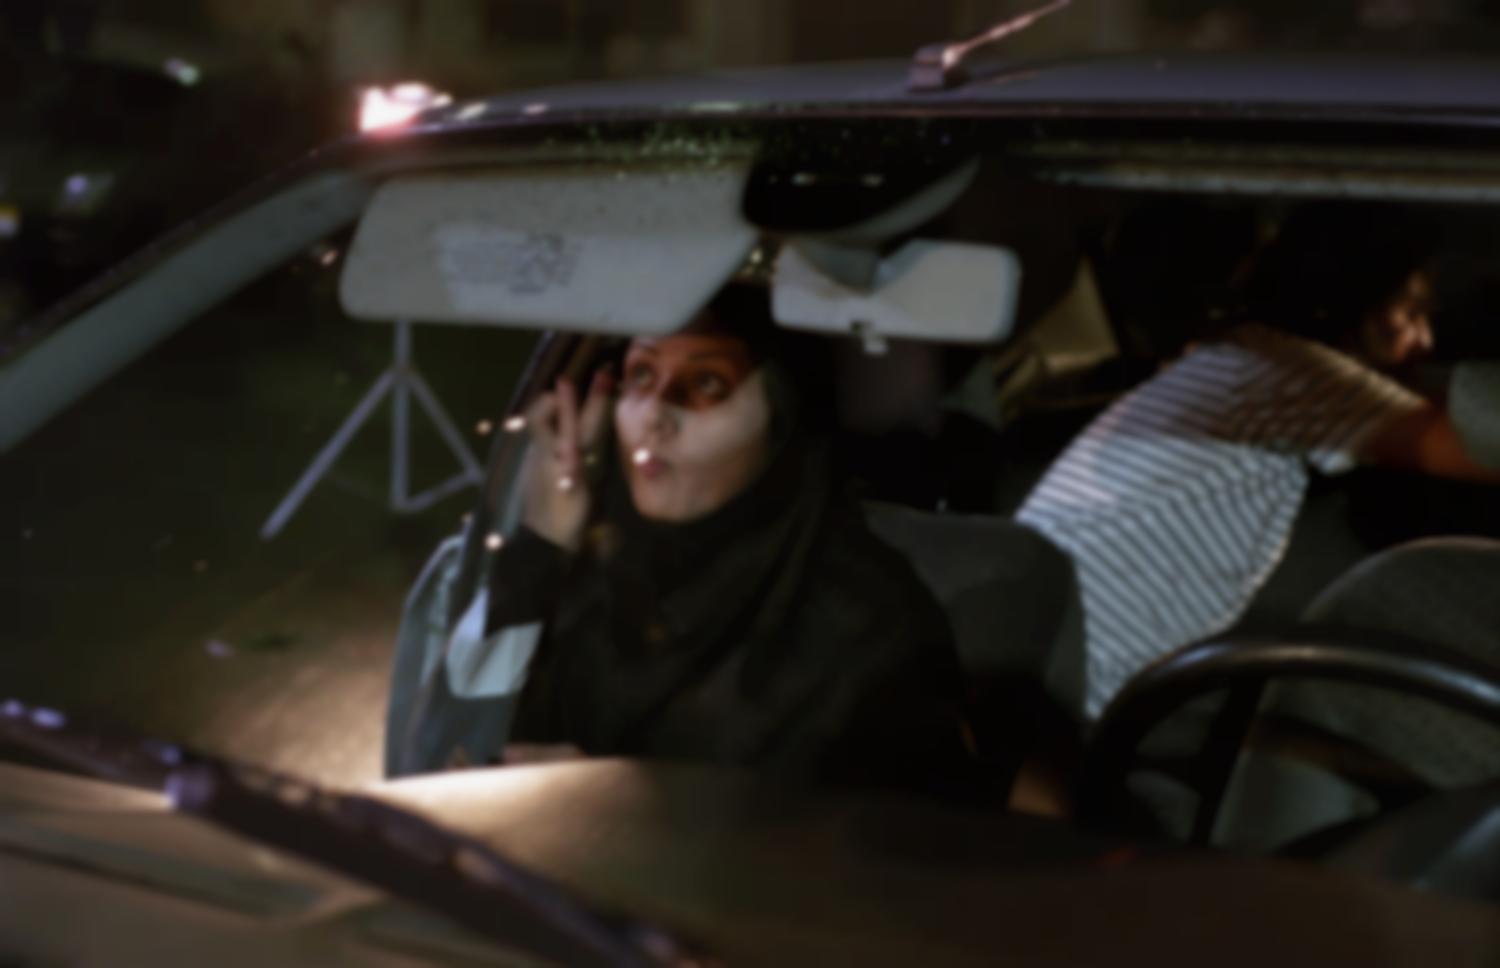 Baran Kosari vérifie son maquillage dans le pare-soleil de la voiture où elle s'apprête à tourner une scène. Téhéran, Iran, septembre 2006.